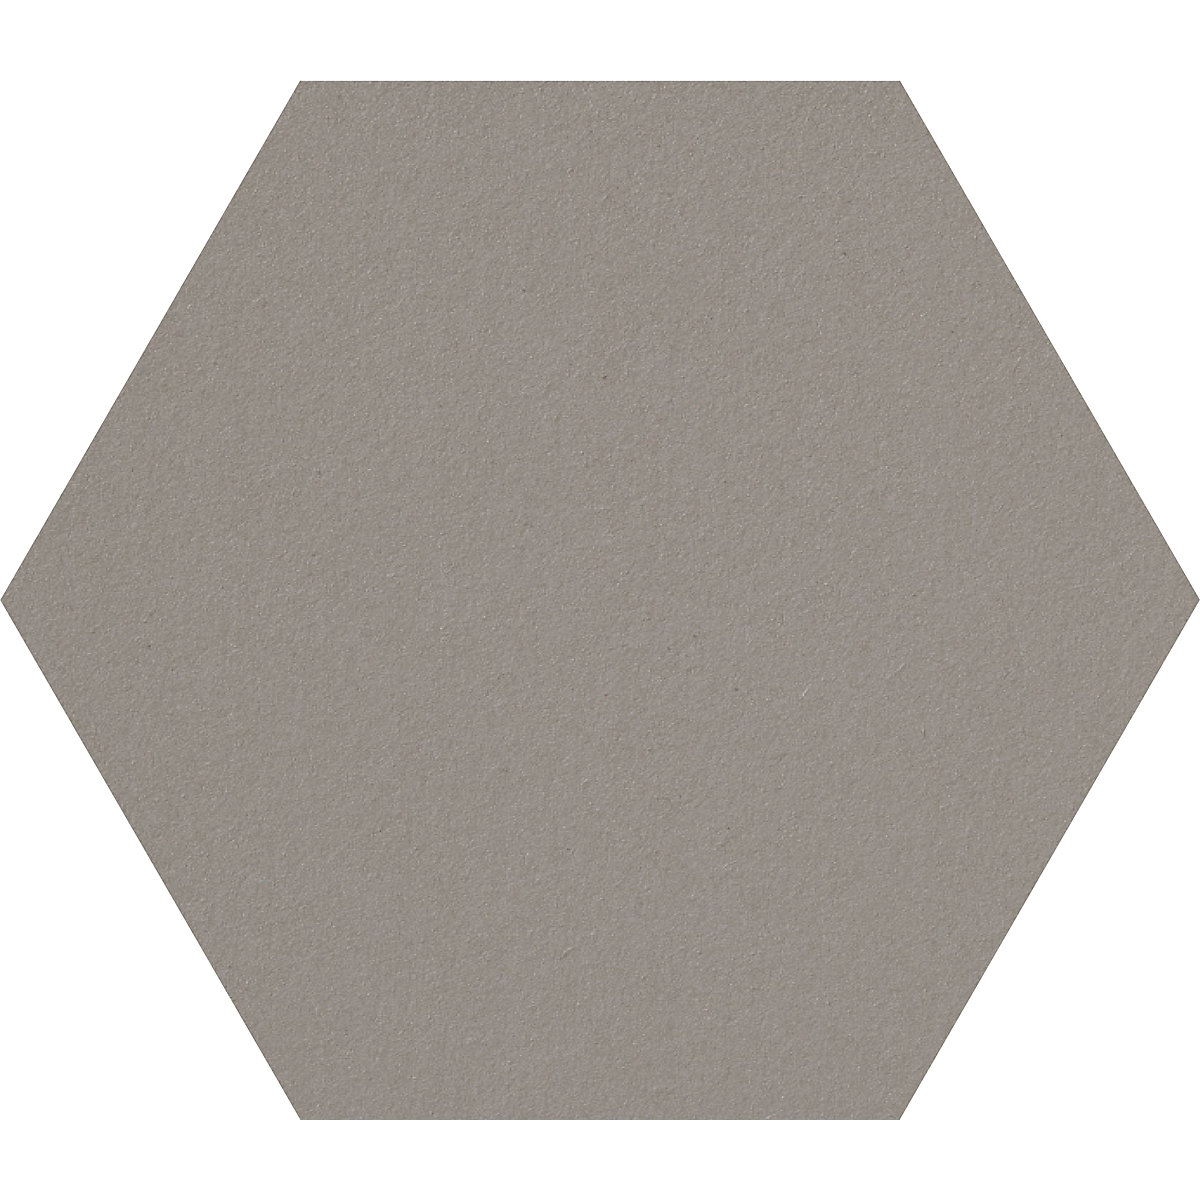 Tableau à épingles design hexagonal – Chameleon, liège, l x h 600 x 600 mm, gris-bleu-25